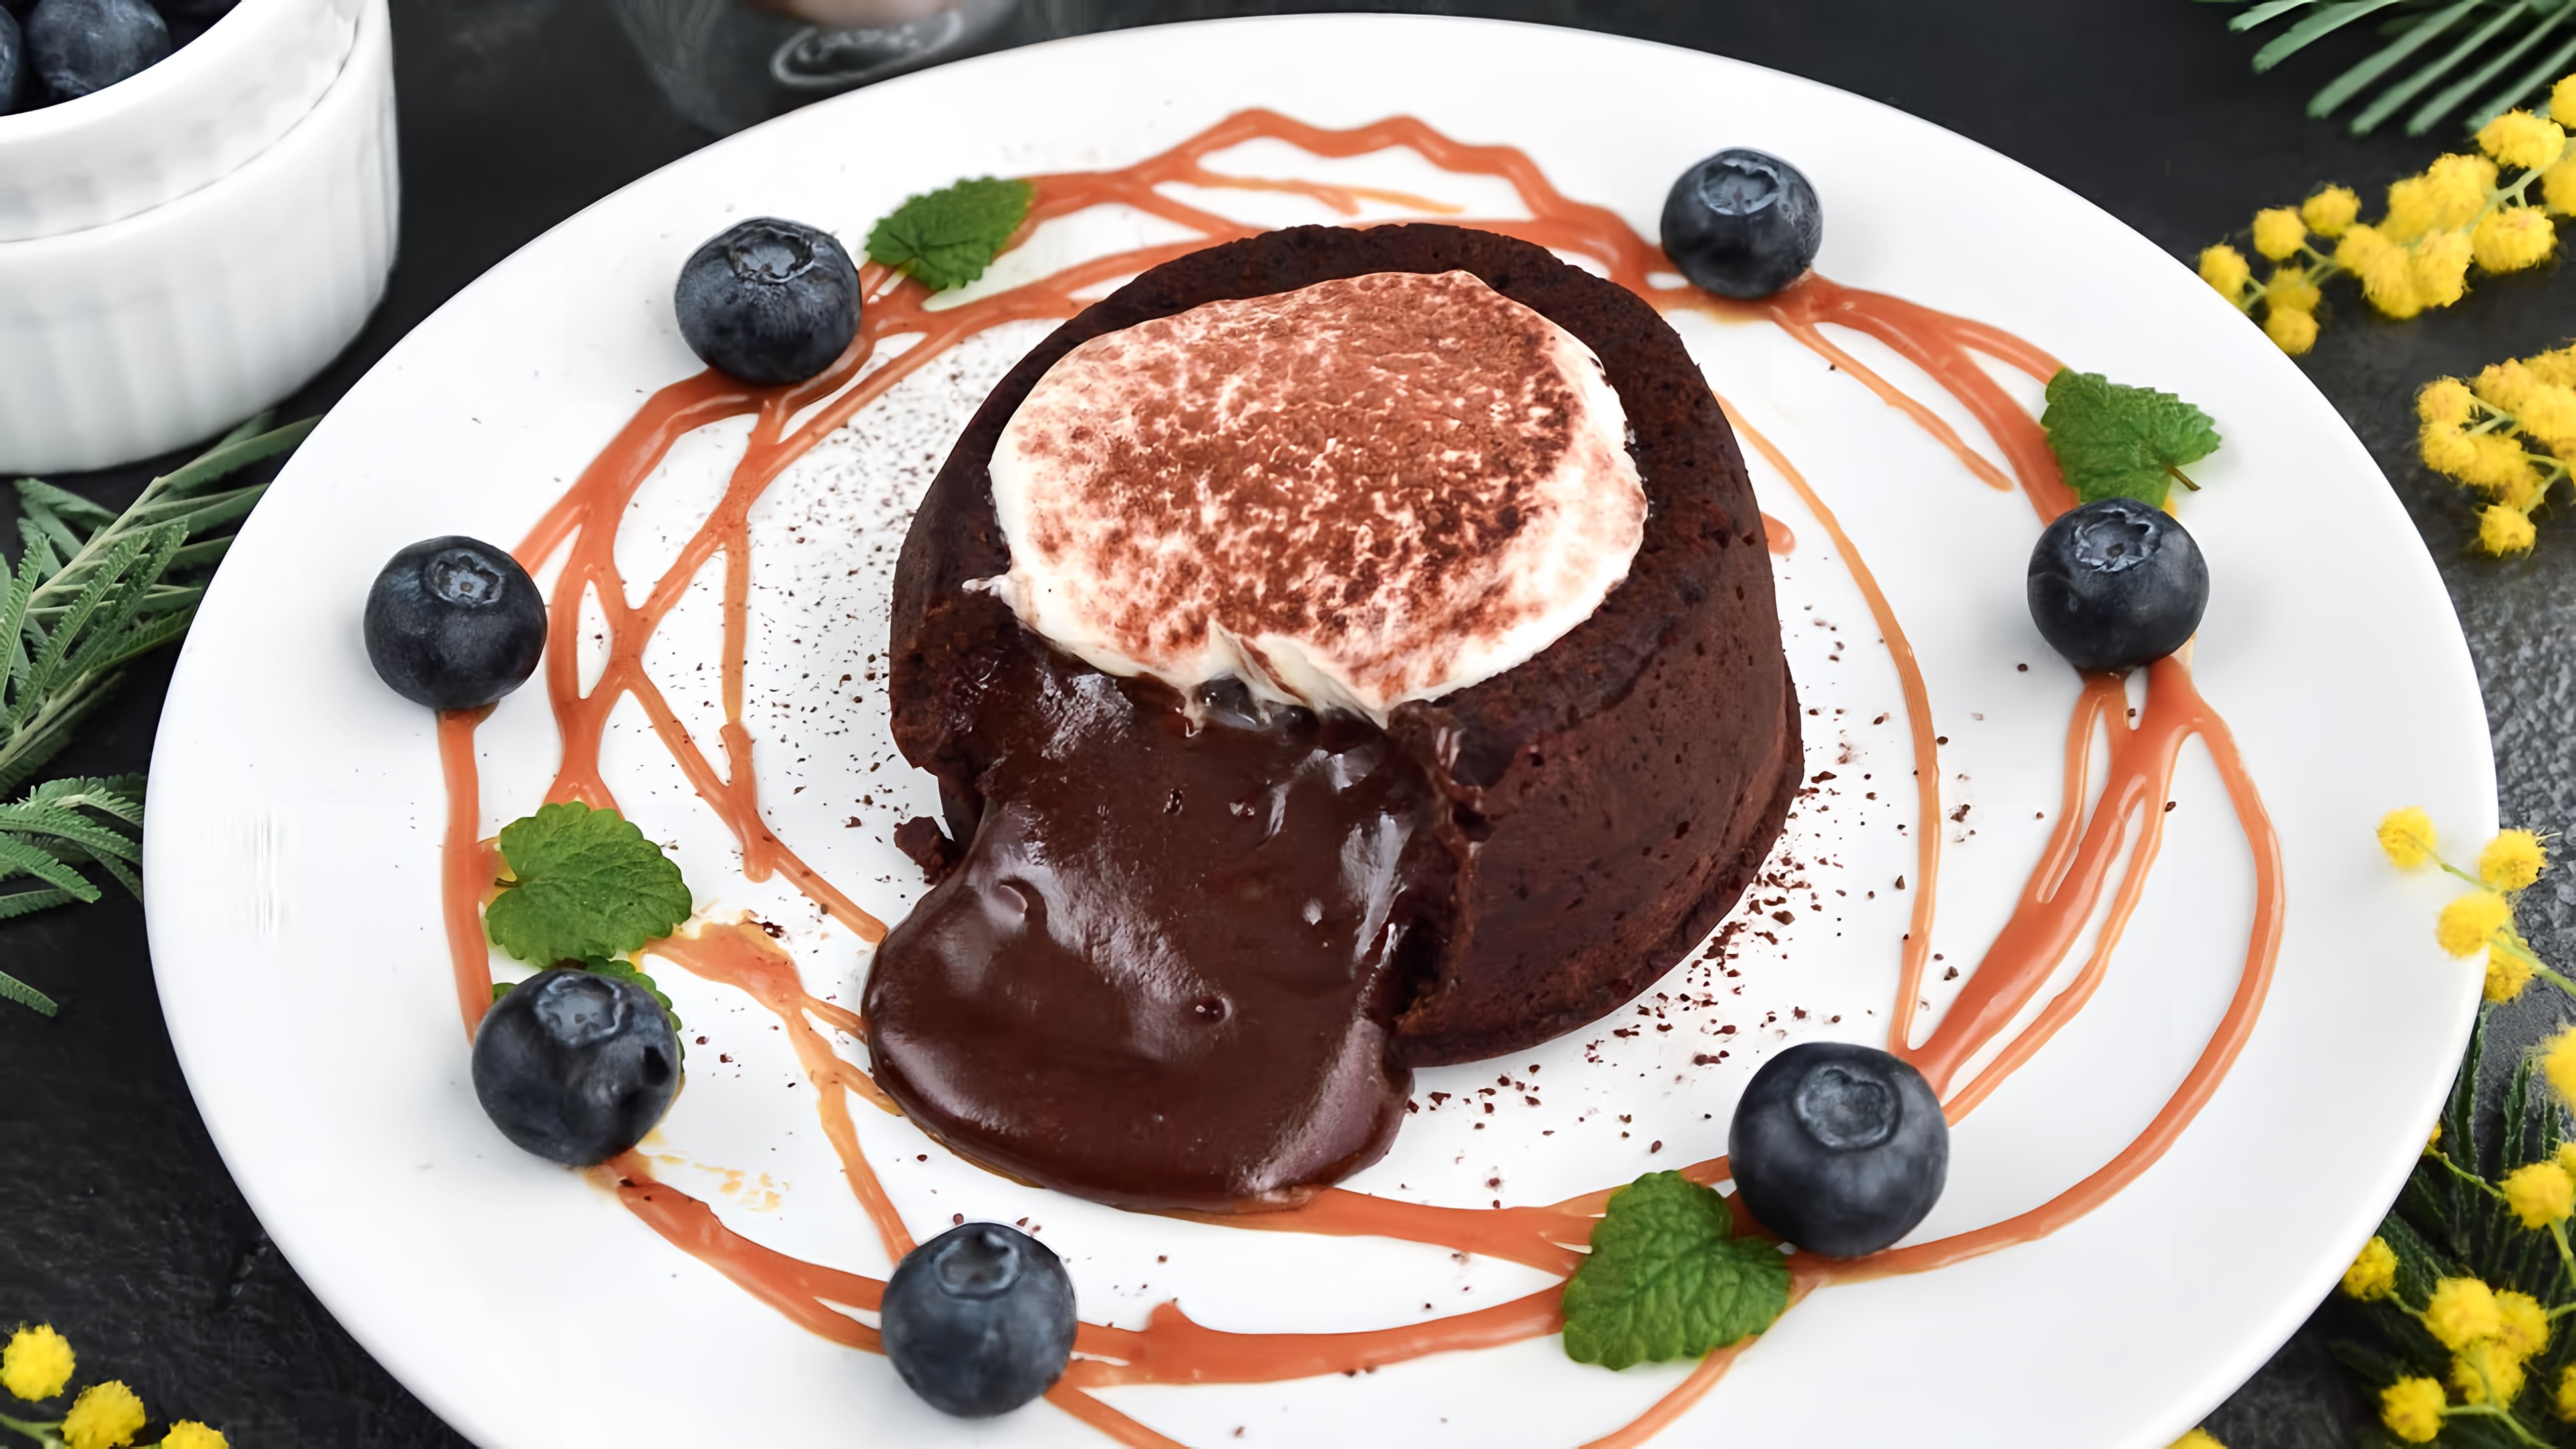 В этом видео демонстрируется рецепт приготовления шоколадного фондана - десерта французской кухни